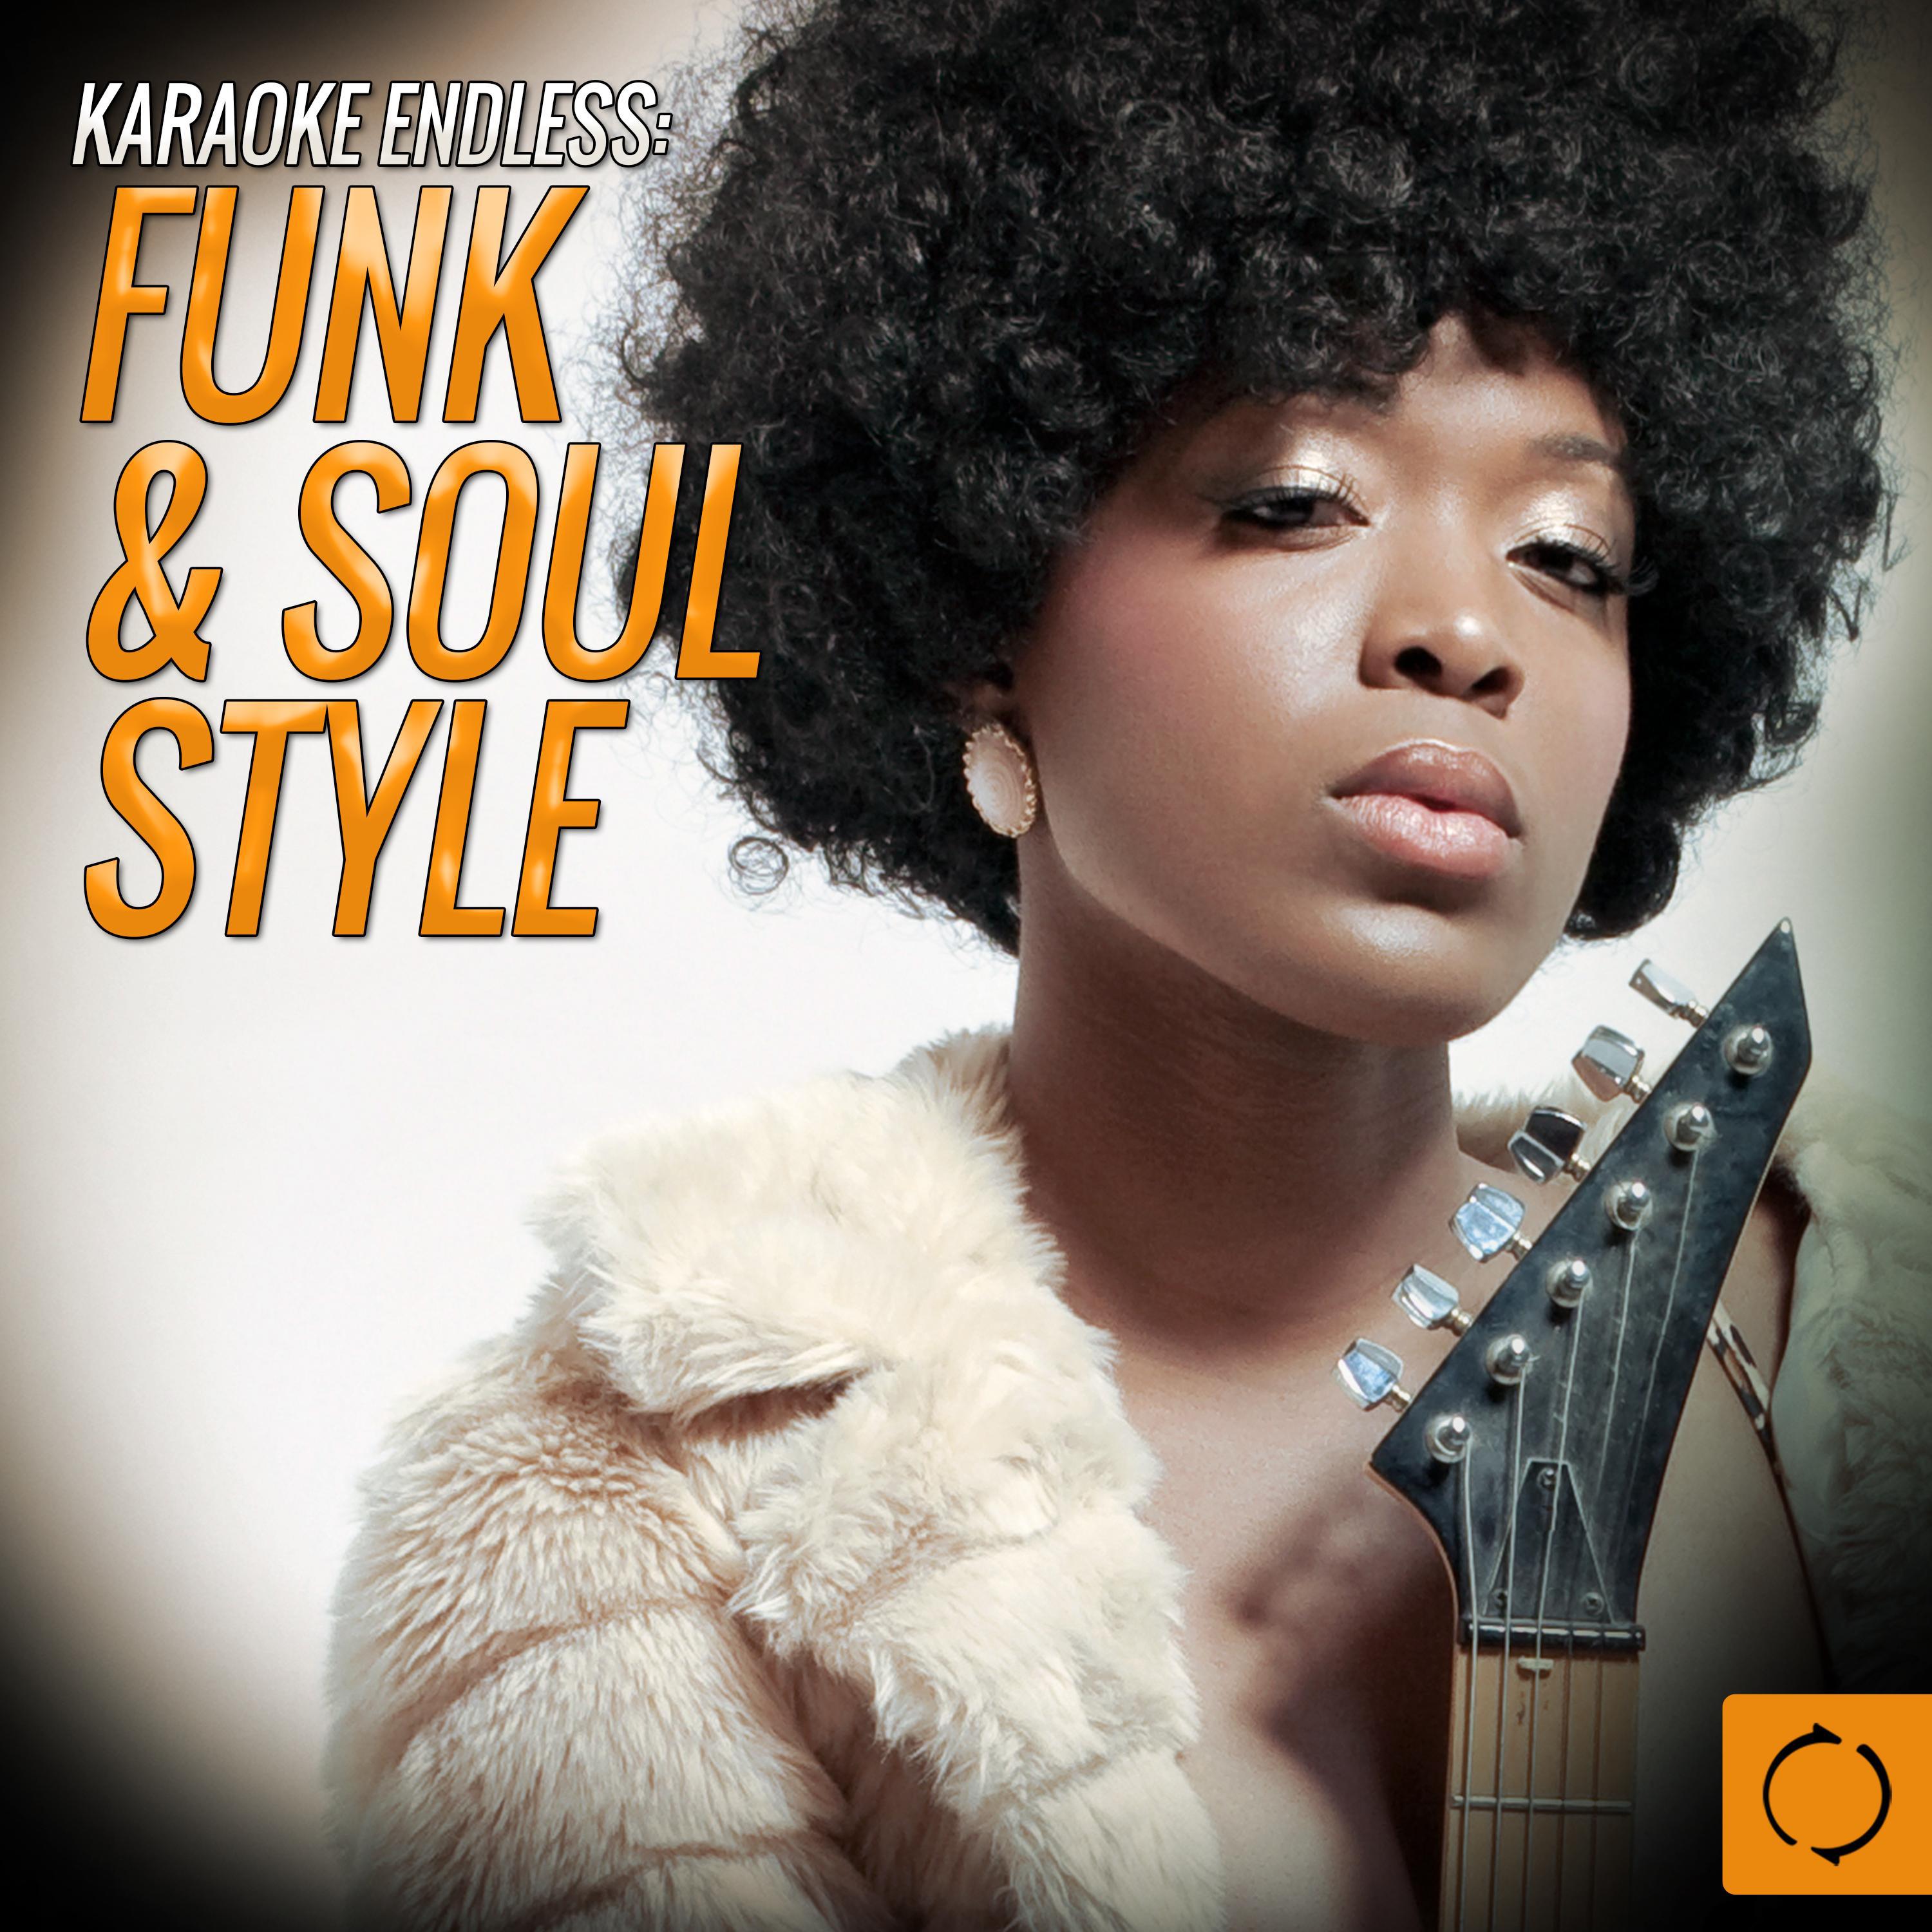 Karaoke Endless: Funk & Soul Style